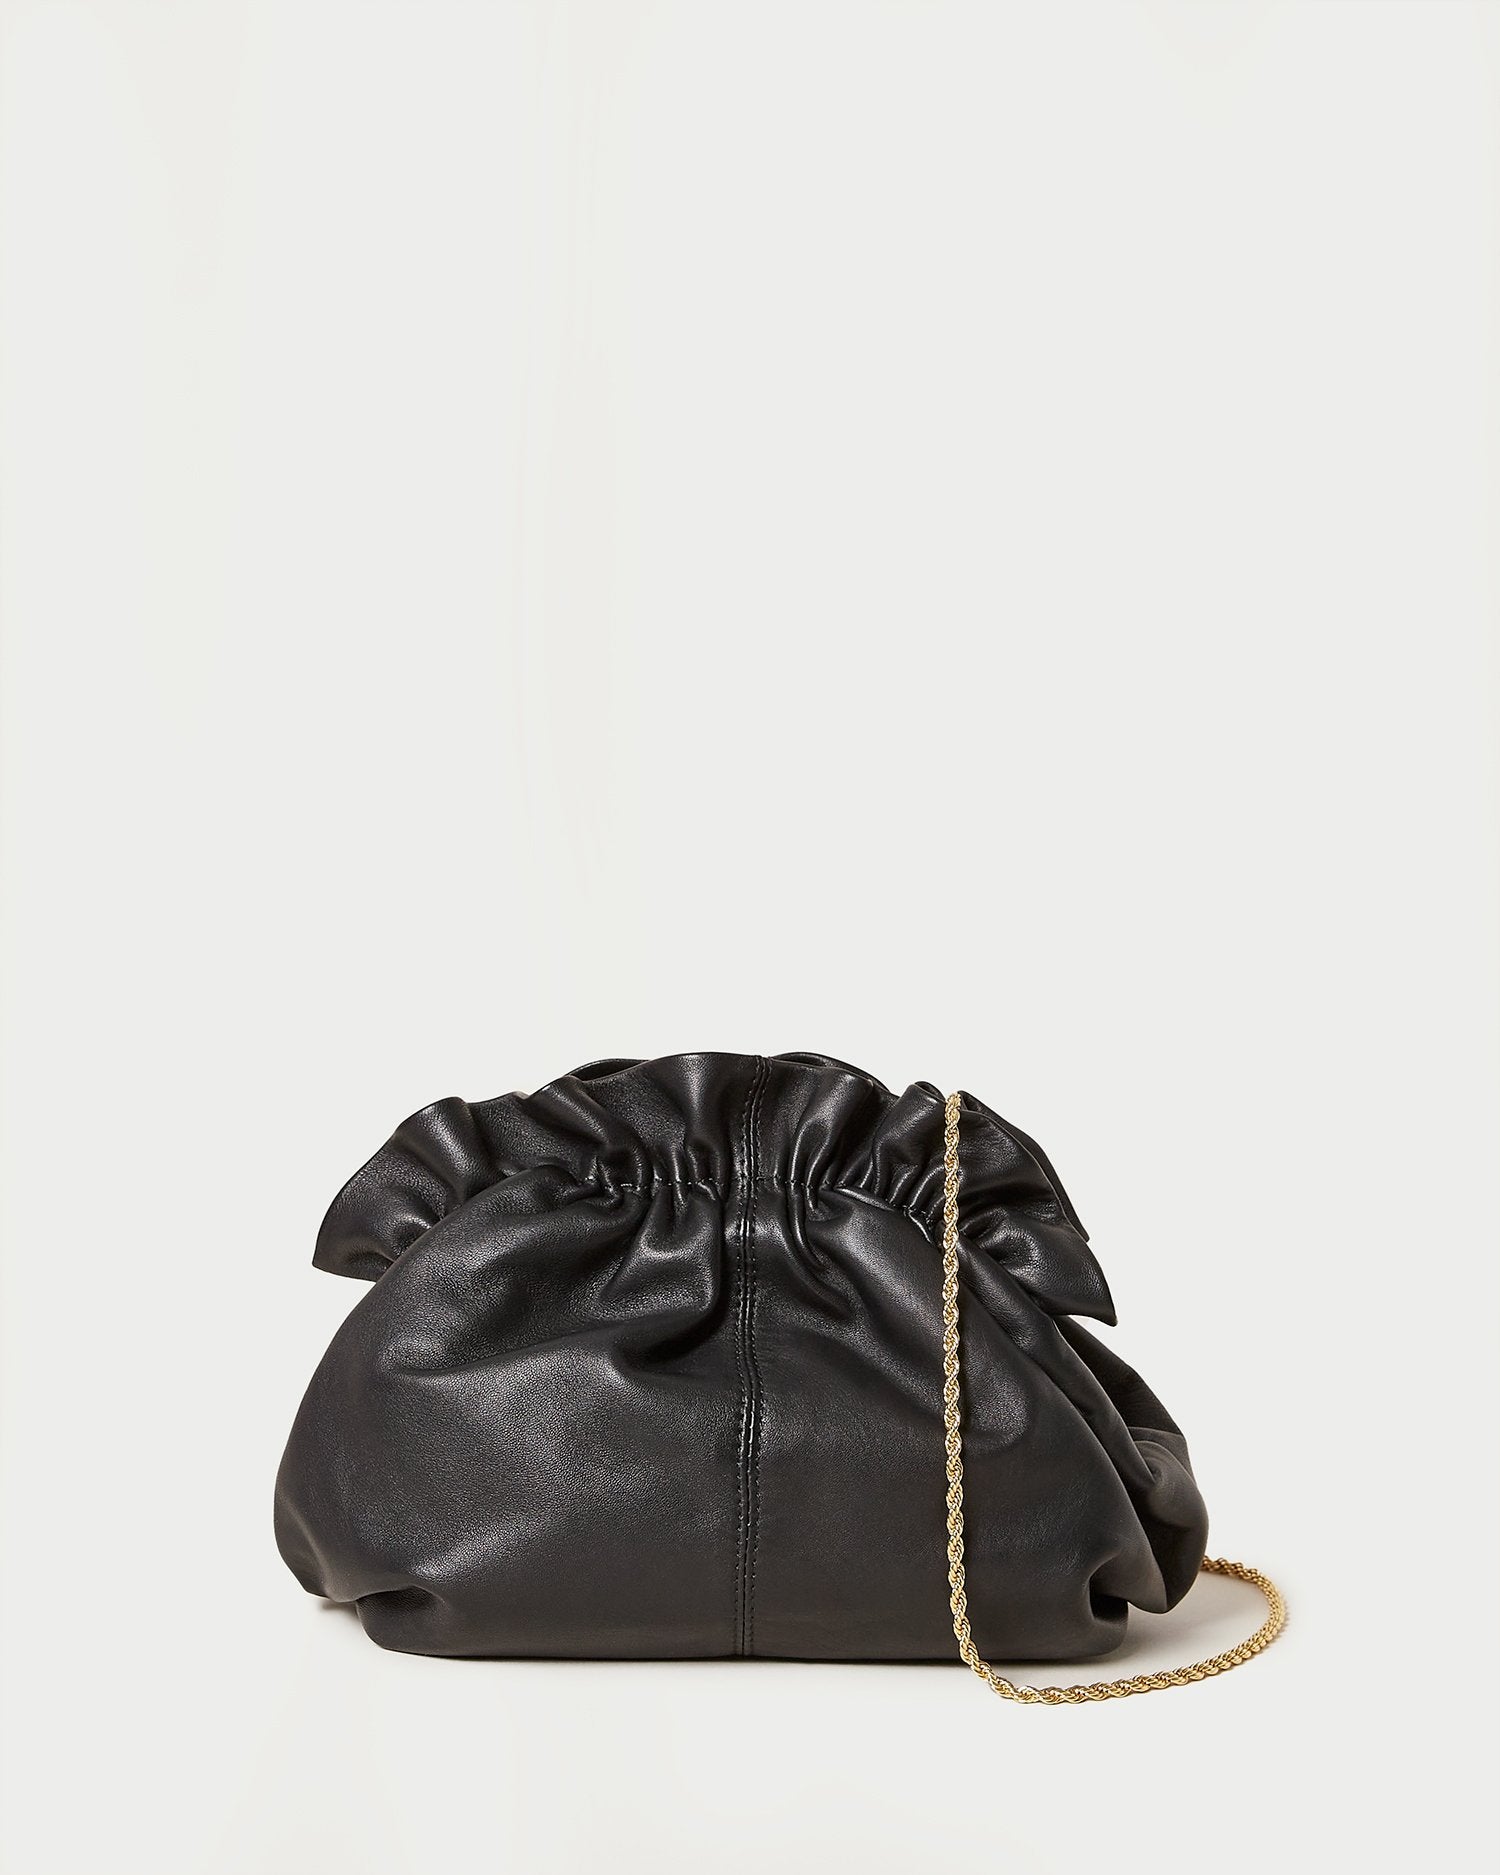 Loeffler Randall Delphine Leather Clutch in Black – AZURE